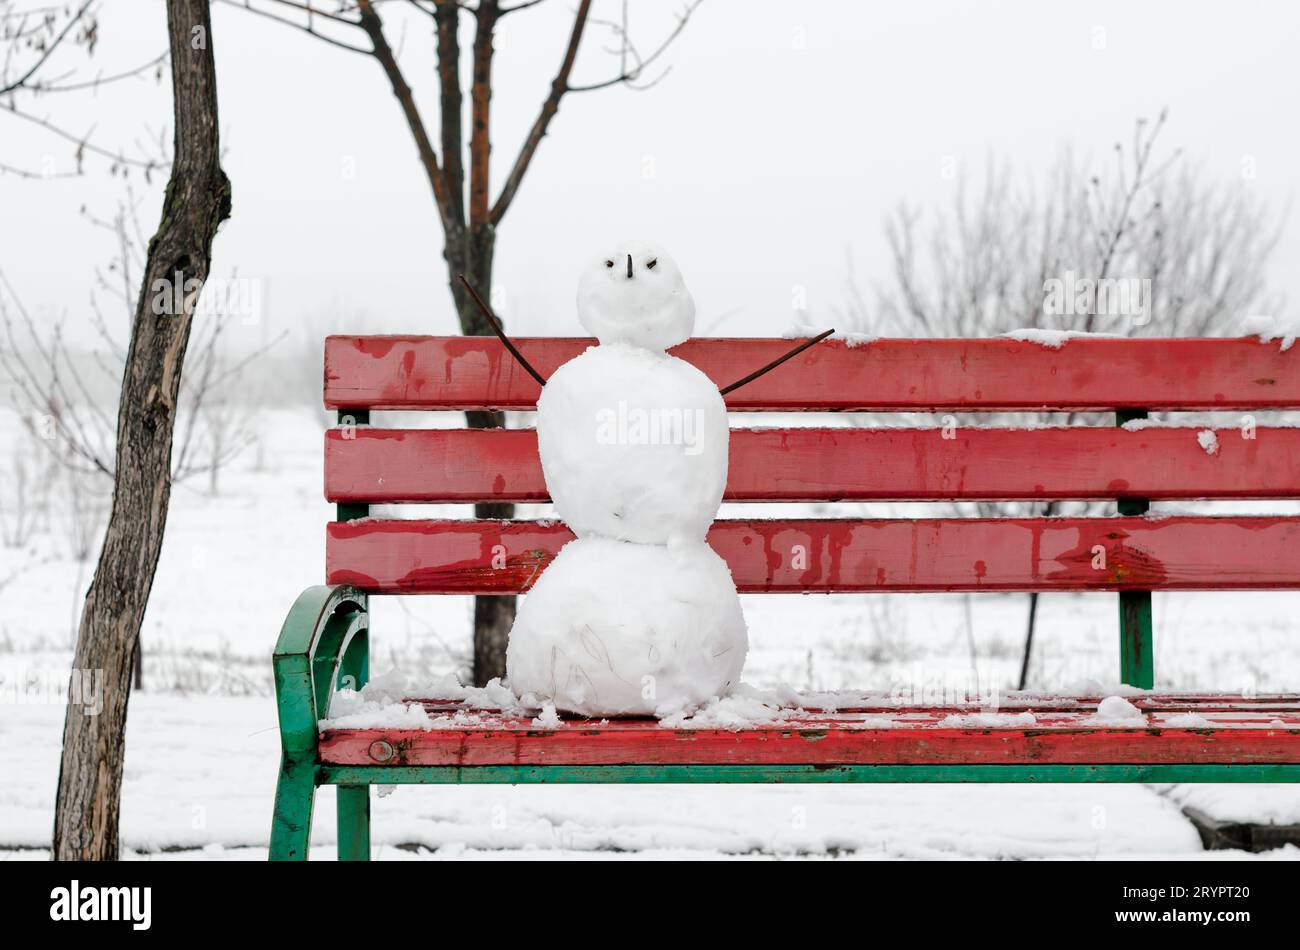 Gruseliger Schneemann auf einer roten Bank in einem verschneiten einsamen Park Stockfoto